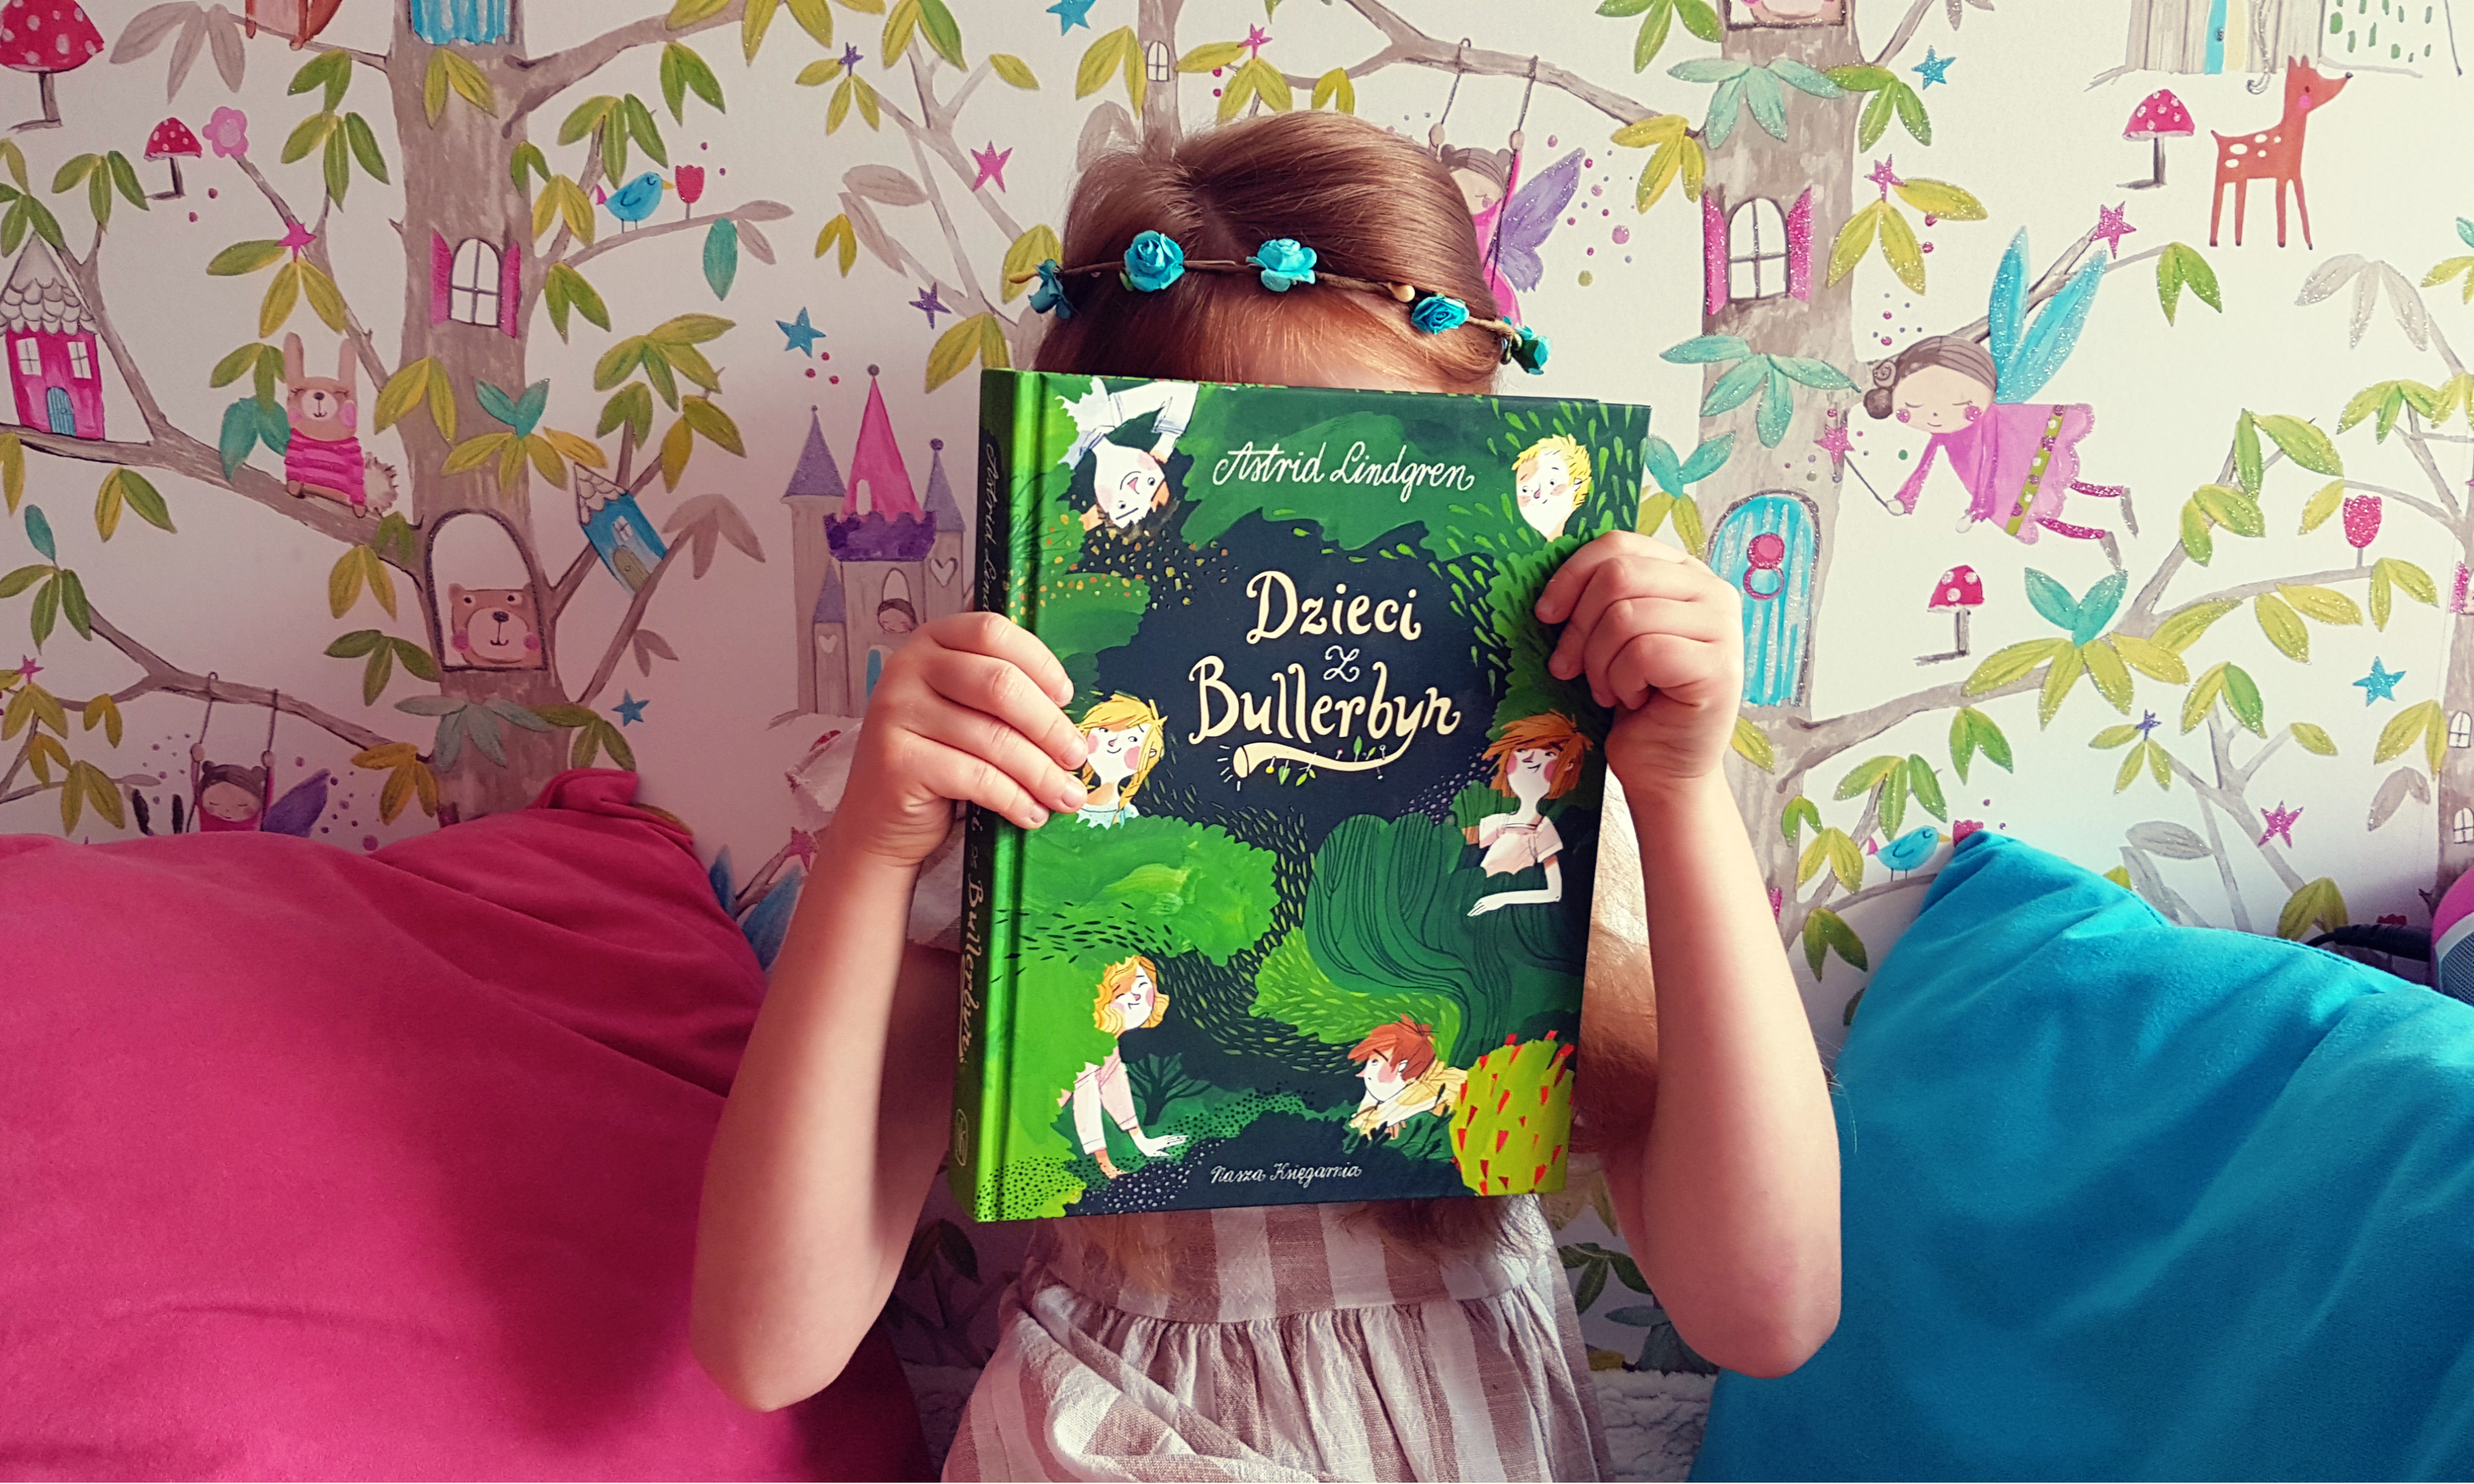 Powrót do dzieciństwa, czyli Dzieci z Bullerbyn Astrid Lindgren: Moja córka oszalała na punkcie tej książki